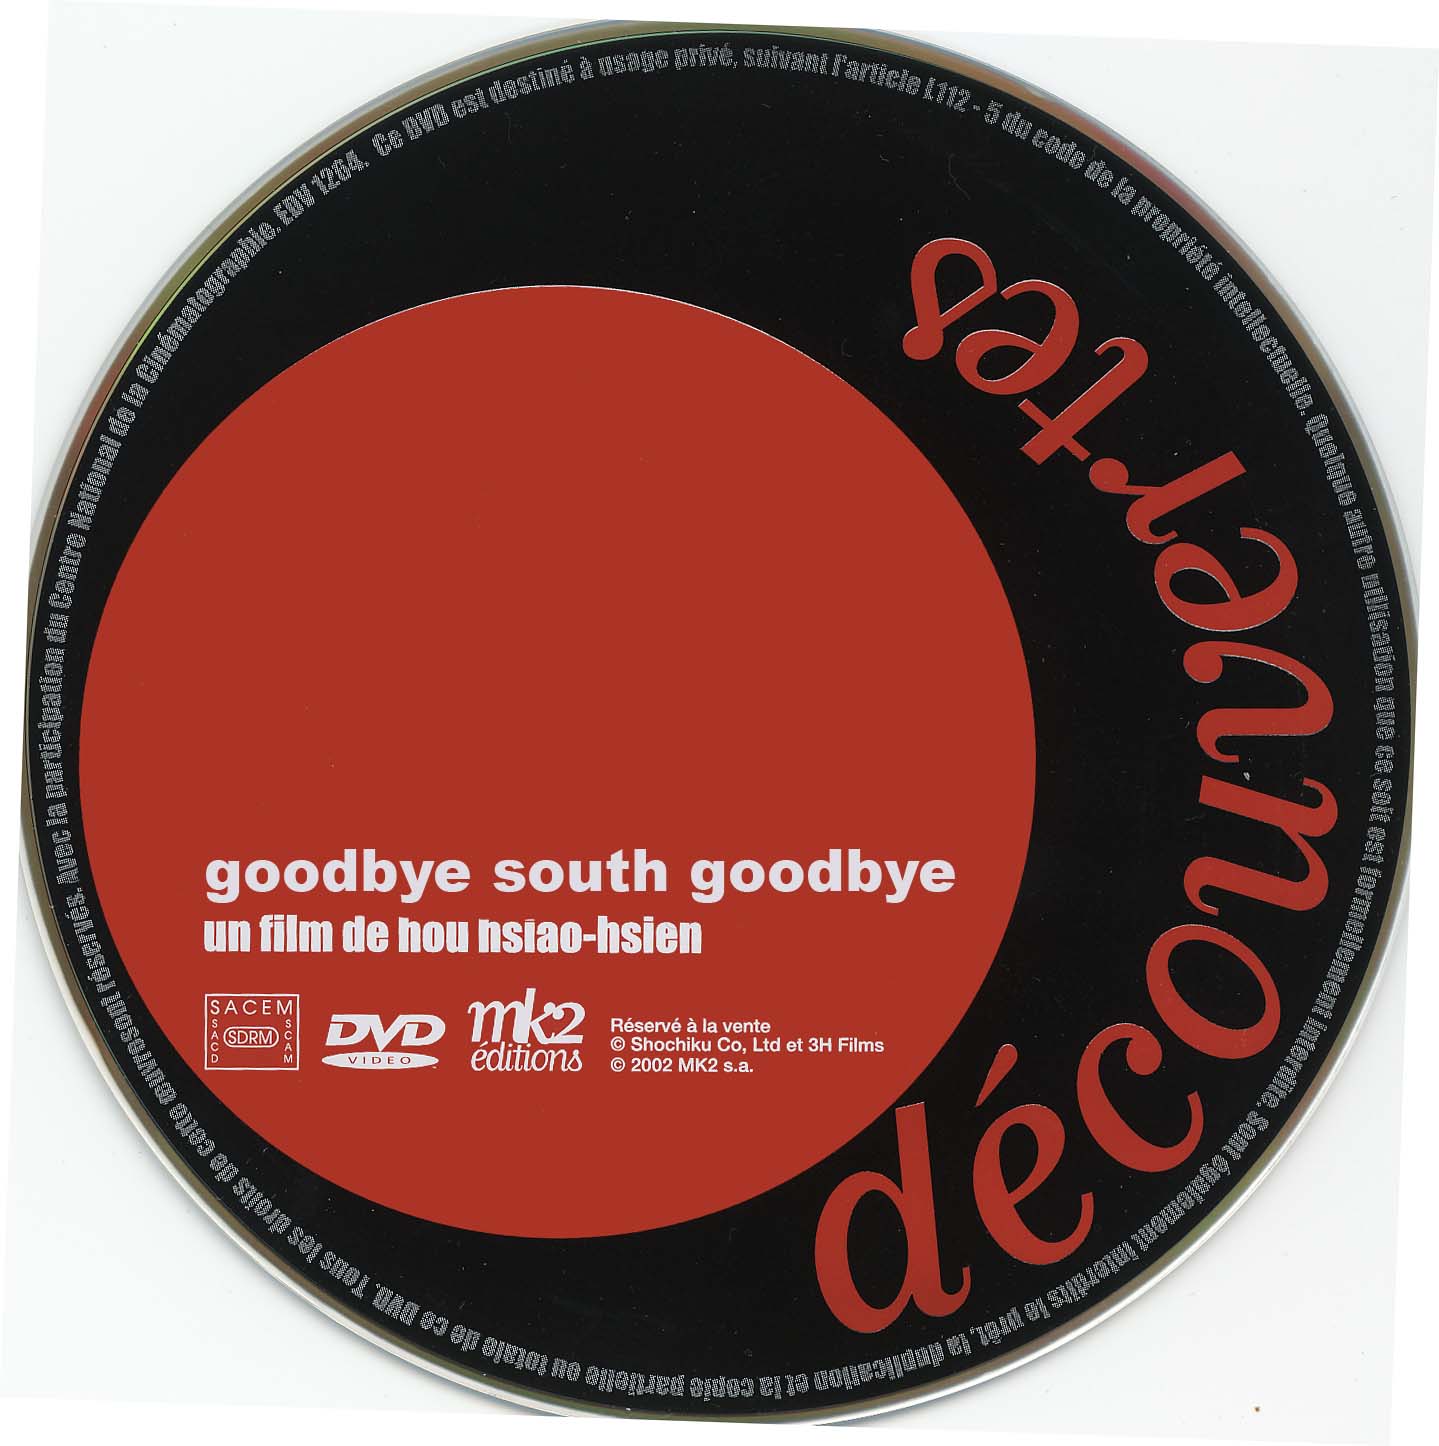 Goodbye south goodbye